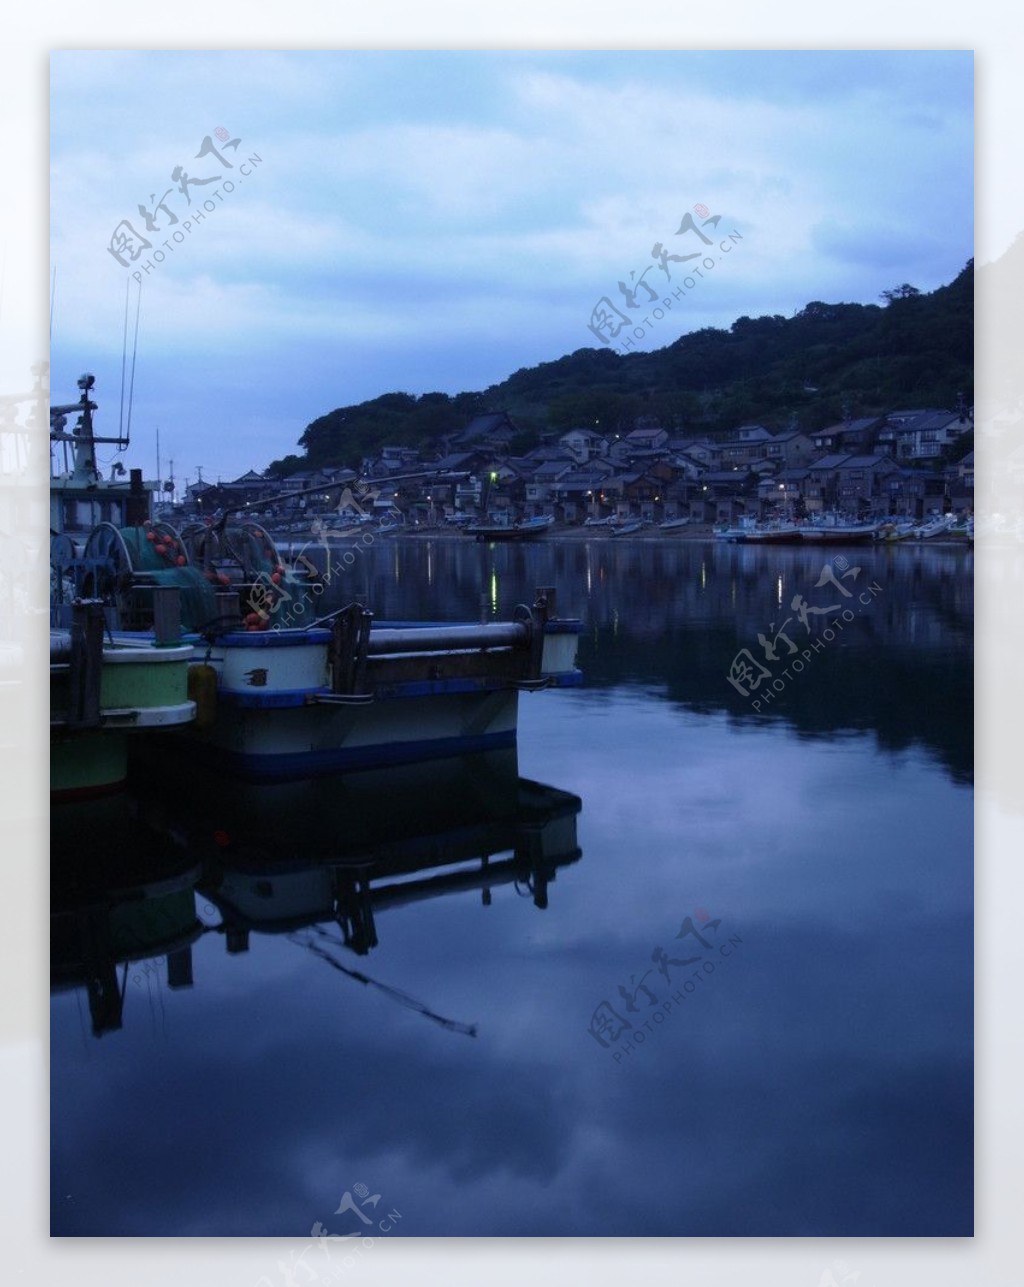 山水风景风景名胜建筑景观自然风景旅游印记休憩的渔船宁静的渔村图片